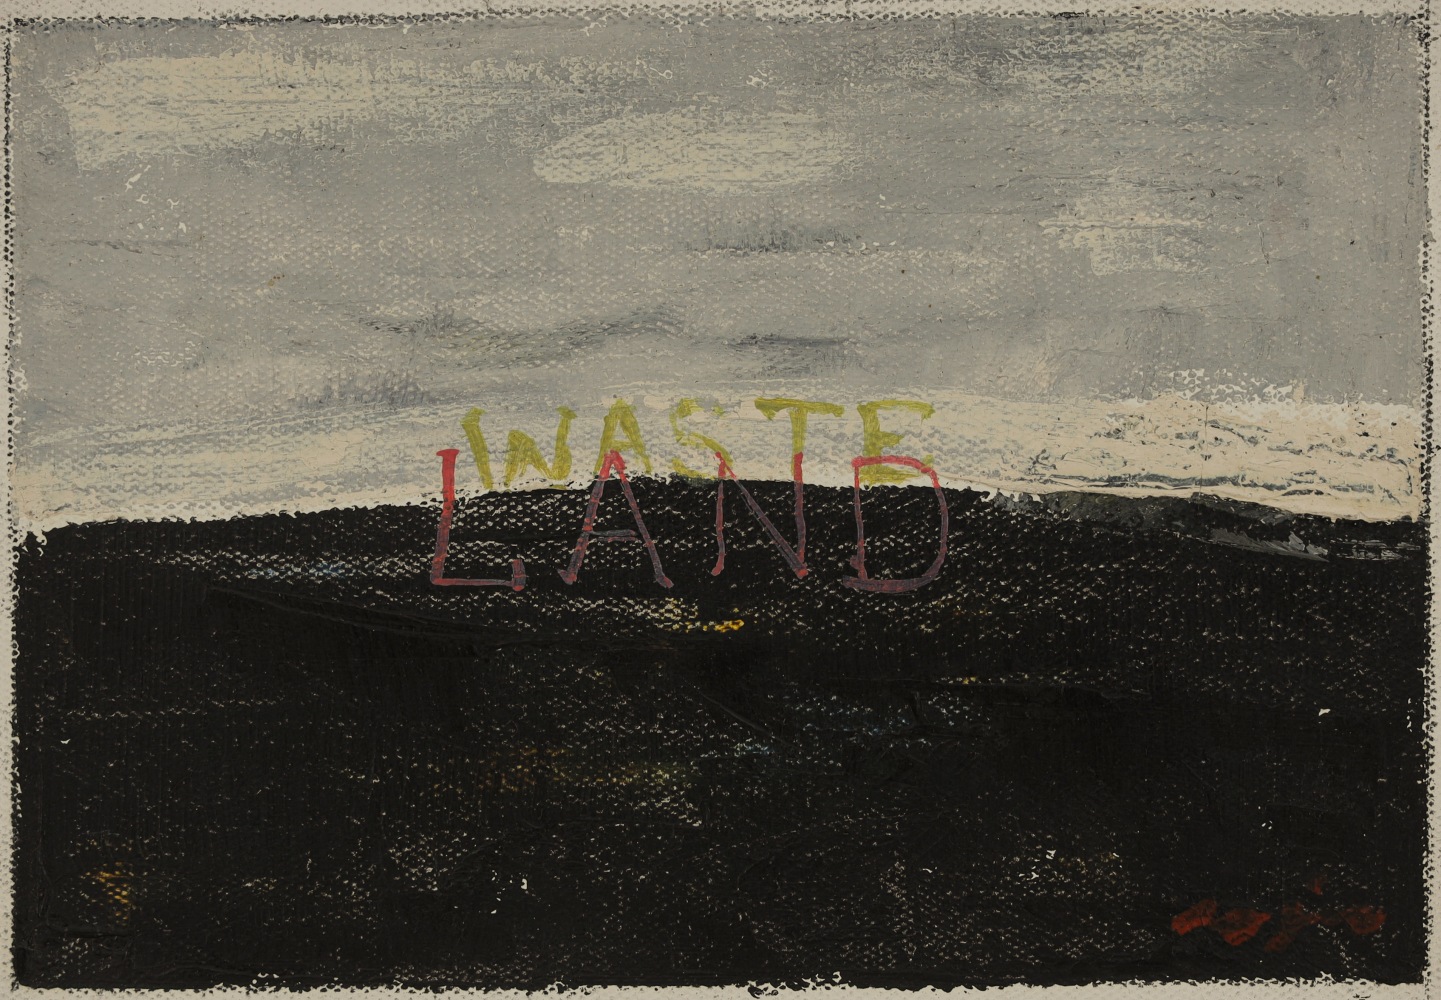 Waste Land

2013&amp;mdash;14

Oil on canvas

11 x 16 cm / 4.3 x 6.3 in